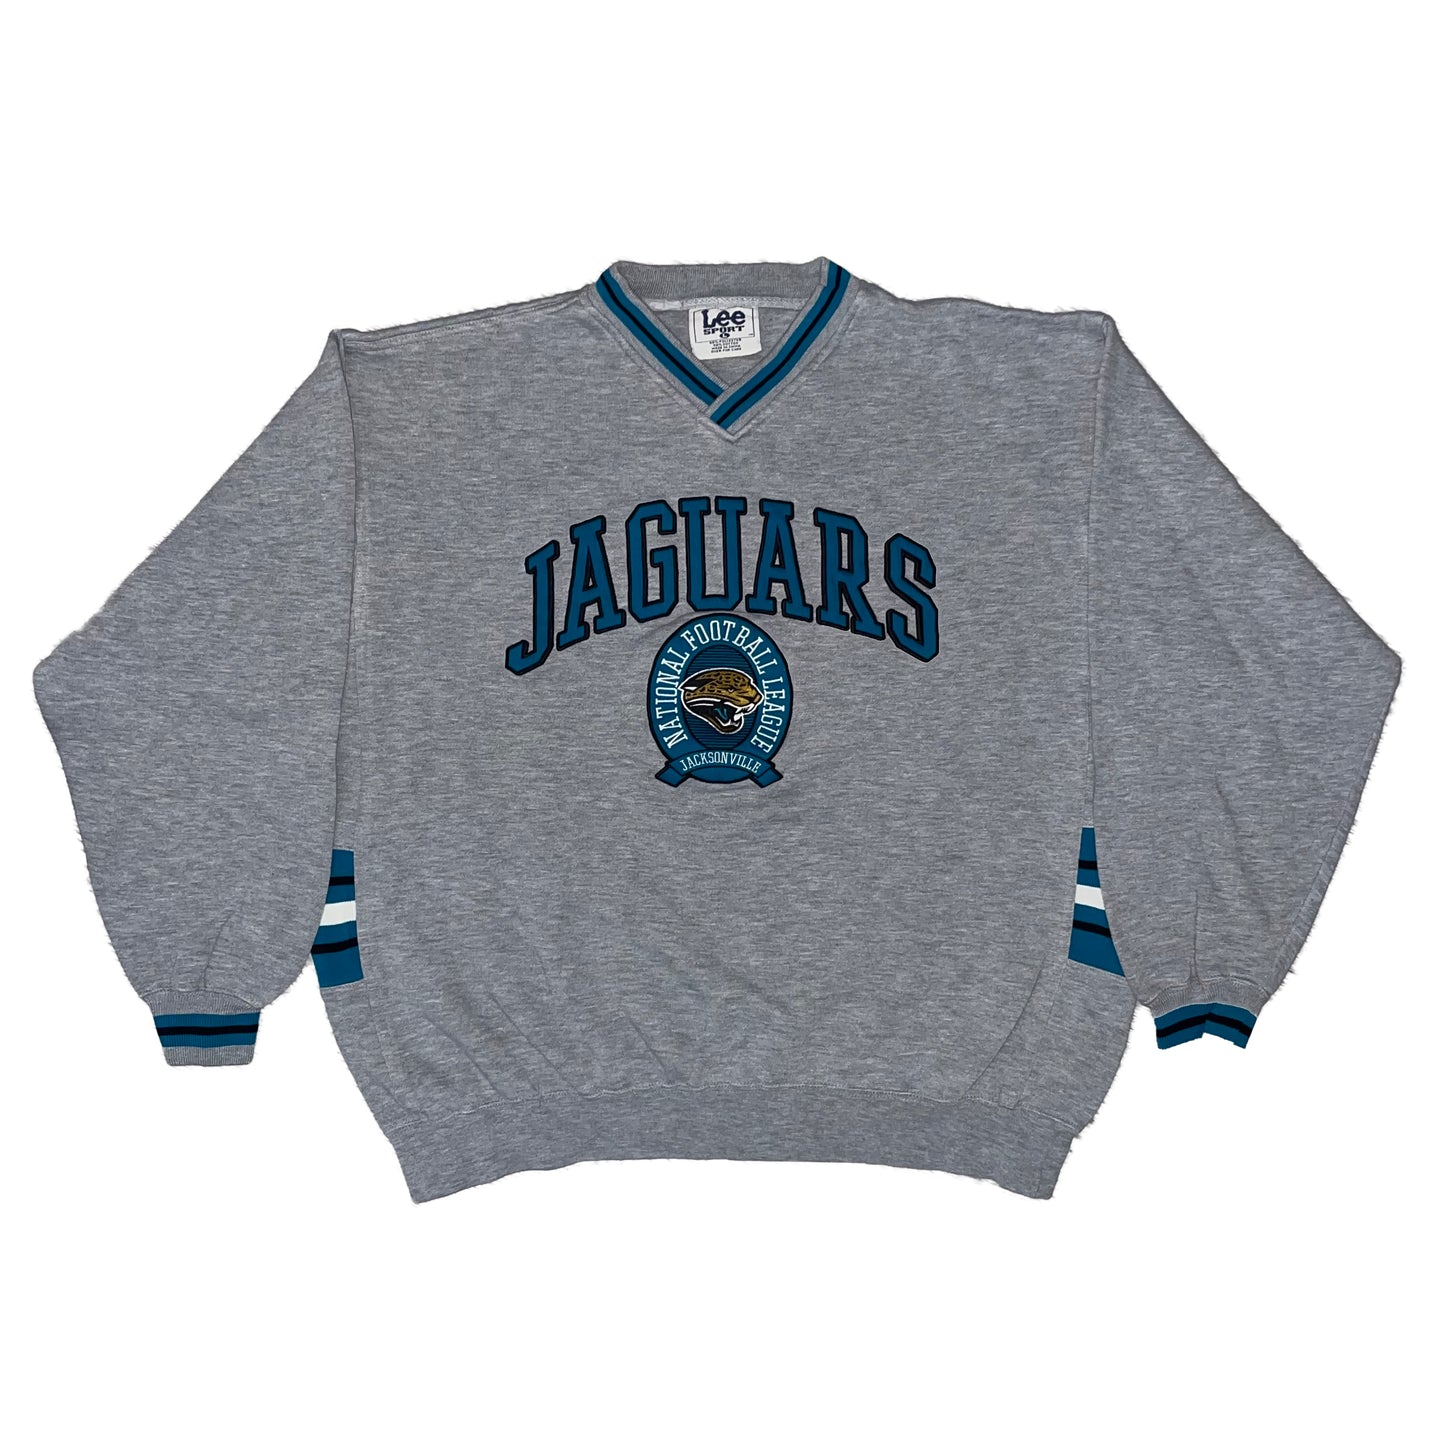 Vintage Jacksonville Jaguars Embroidered Sweatshirt size MEDIUM